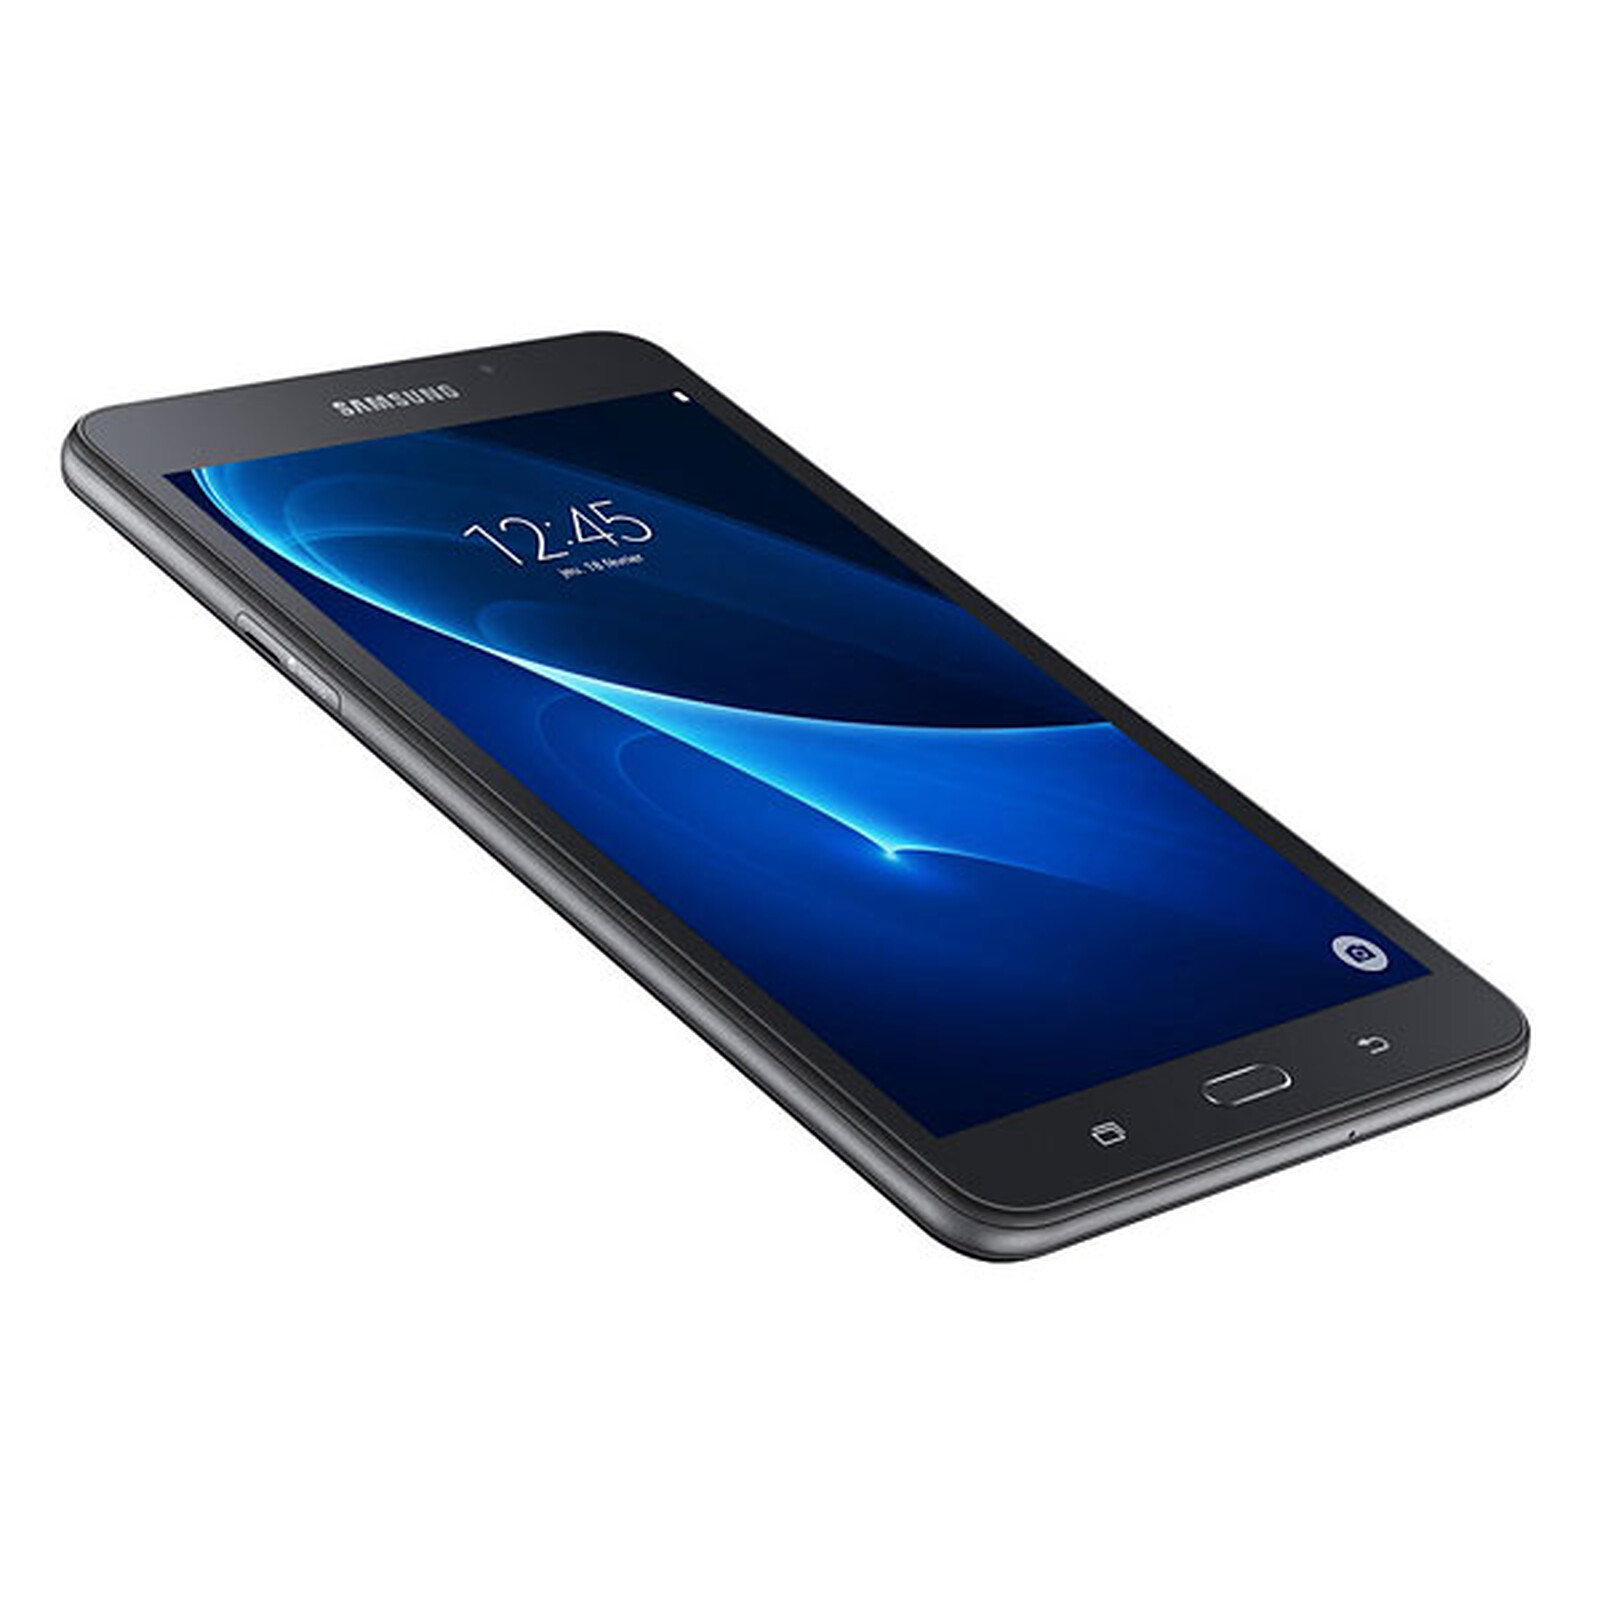 Samsung Galaxy Tab A : fiche technique, prix, et date de sortie